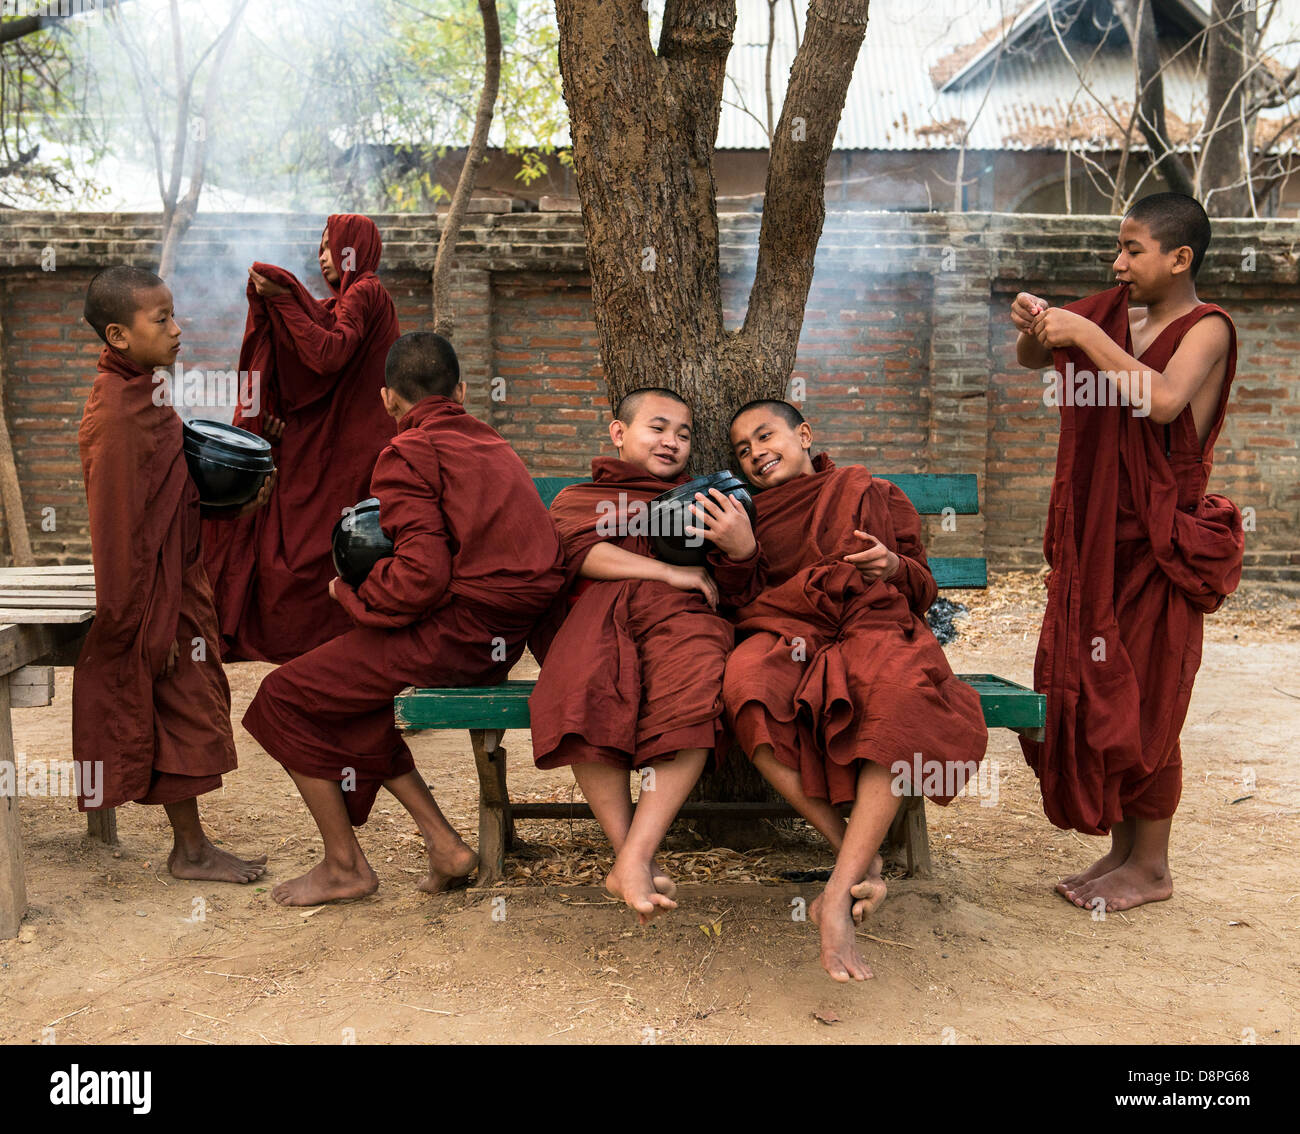 Les moines bouddhistes se reposer avant de recueillir des aumônes (boules) ou de l'alimentation dans la matinée des villageois près de Bagan Birmanie Myanmar Banque D'Images